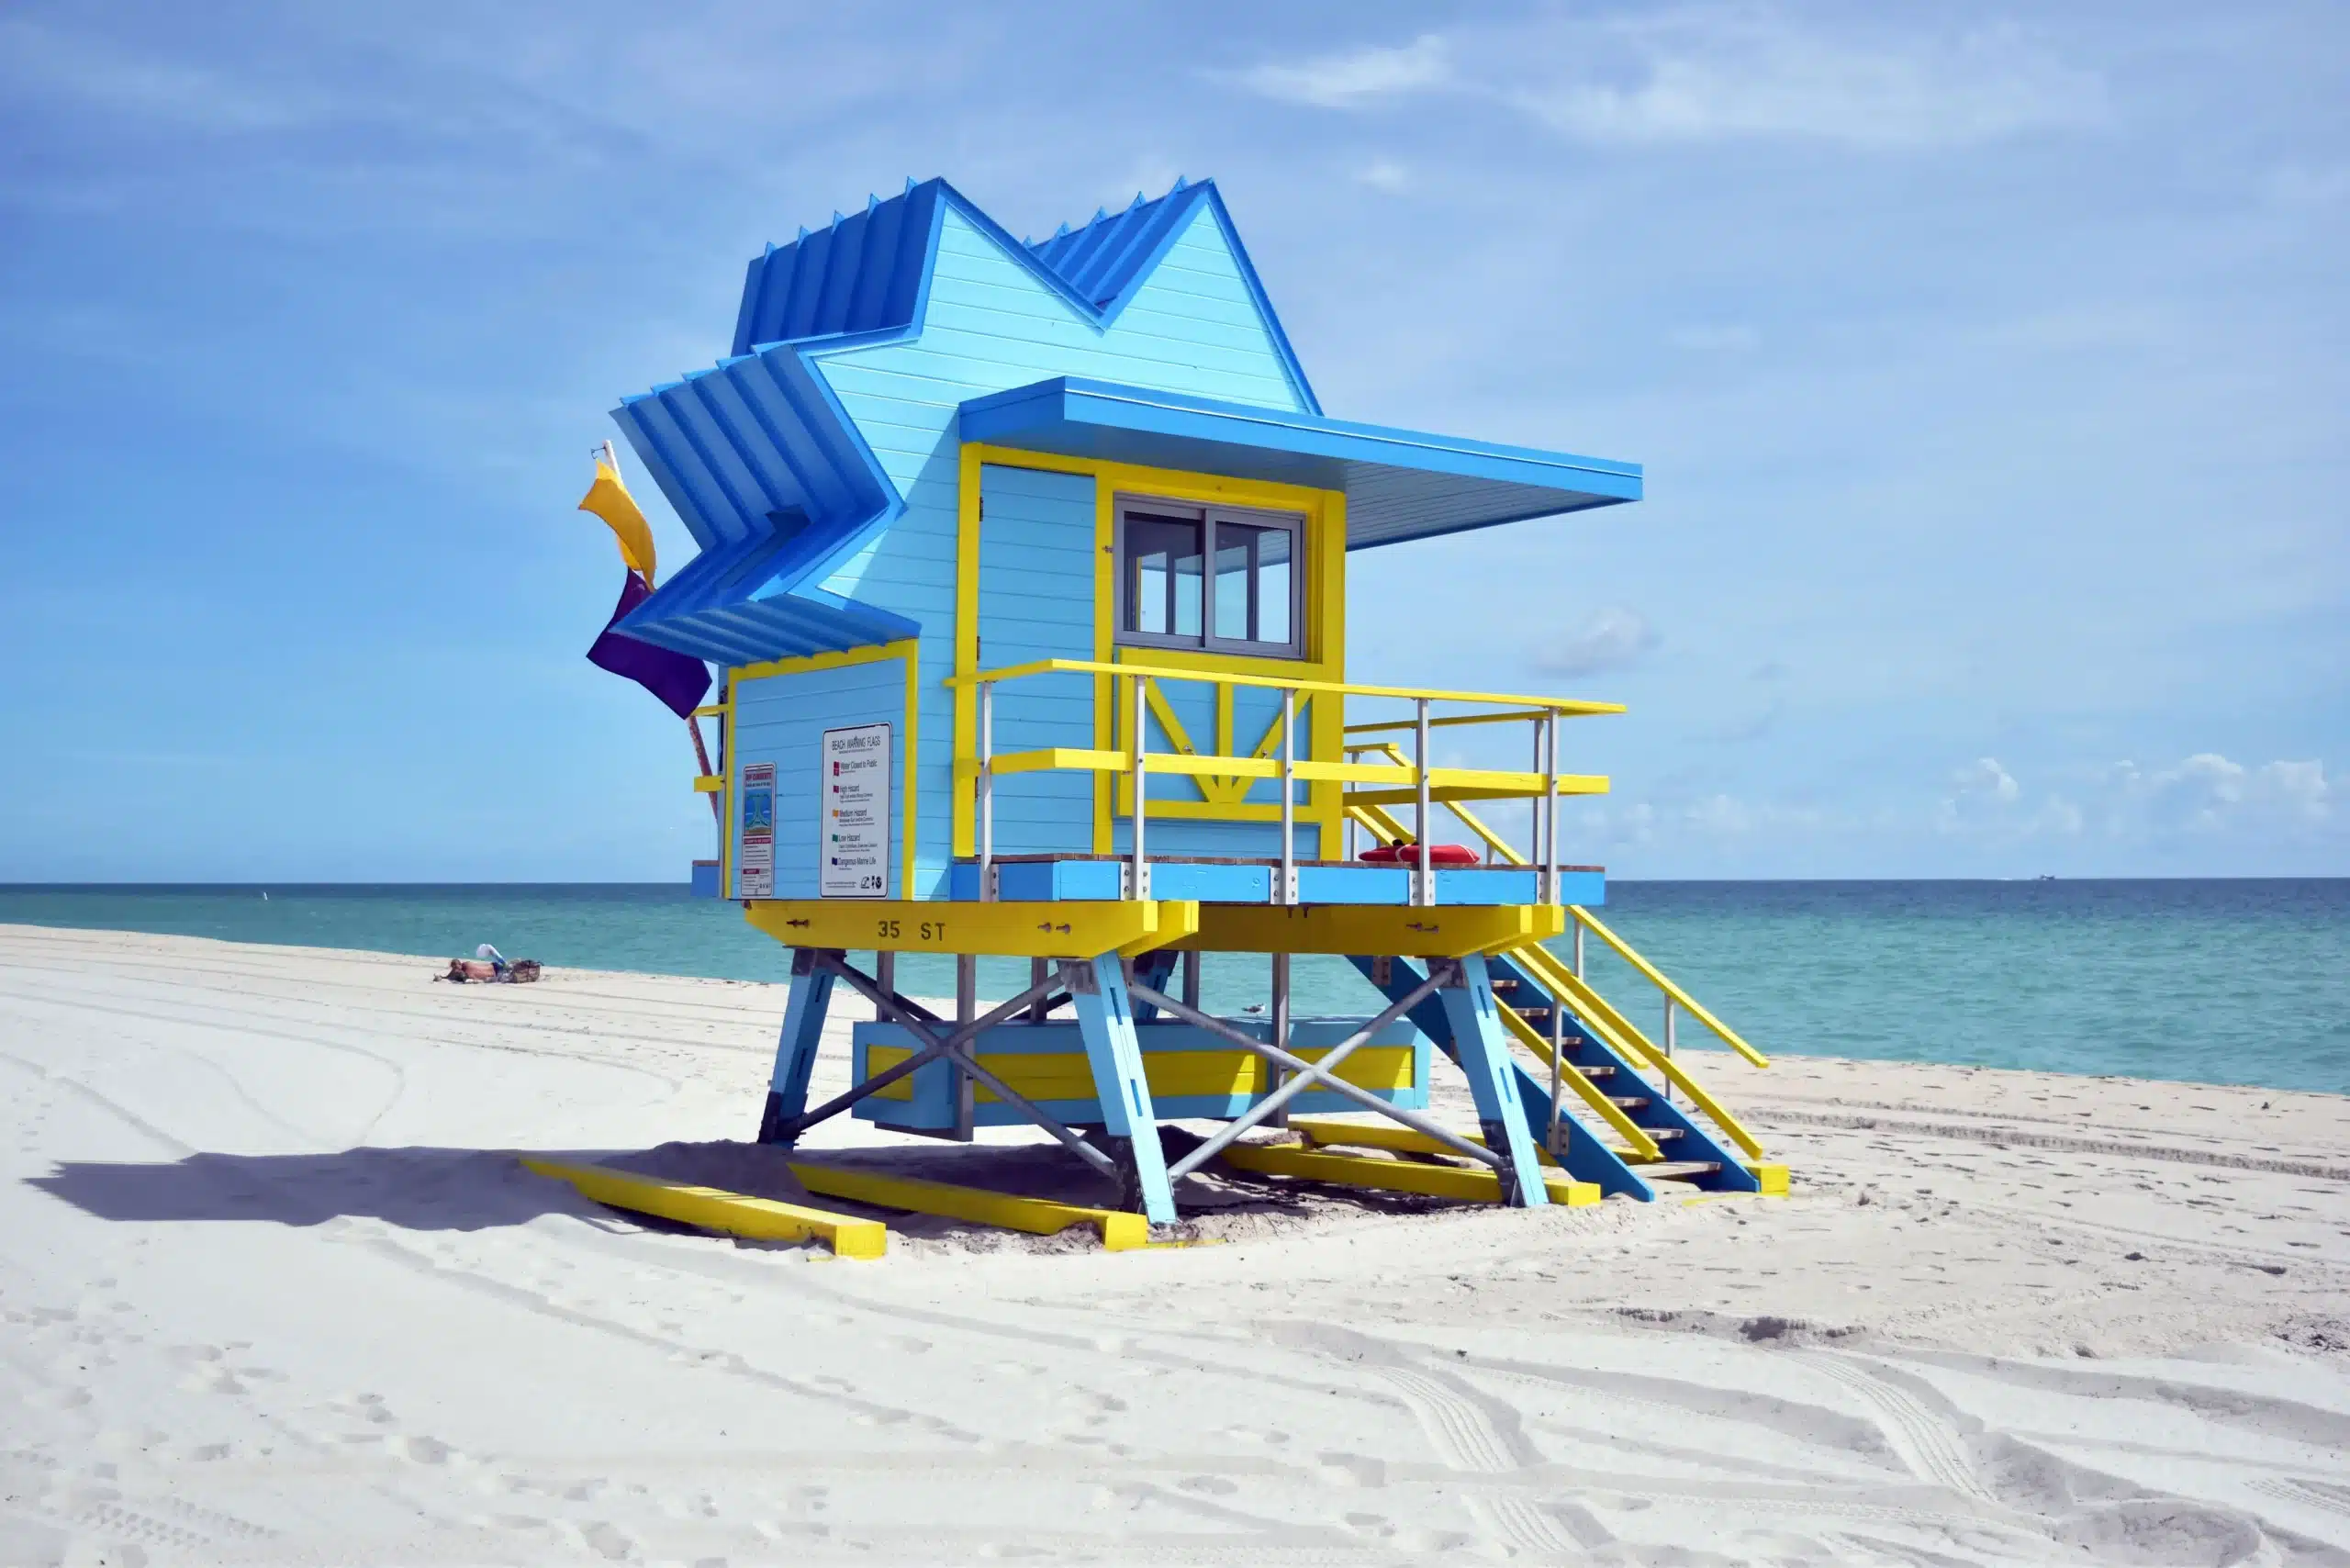 Ein hölzernes Wachhäuschen mit gezacktem Dach in Blautönen und Gelb am Strand. Miami Beach, Lifeguard Tower, William Lane, Foto: Archiv Architekten